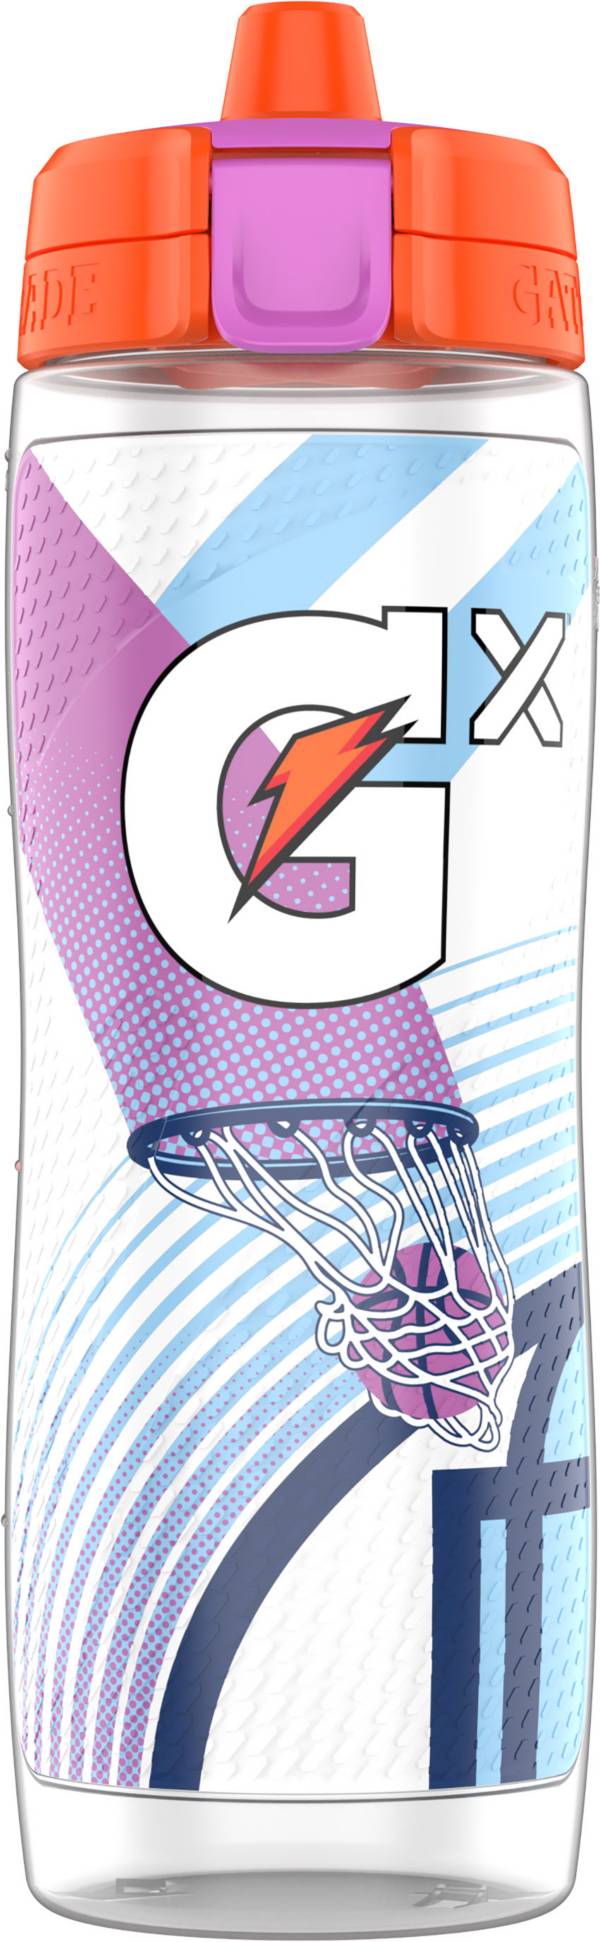 Gatorade Gx 30 oz Fuel Tomorrow Bottle product image